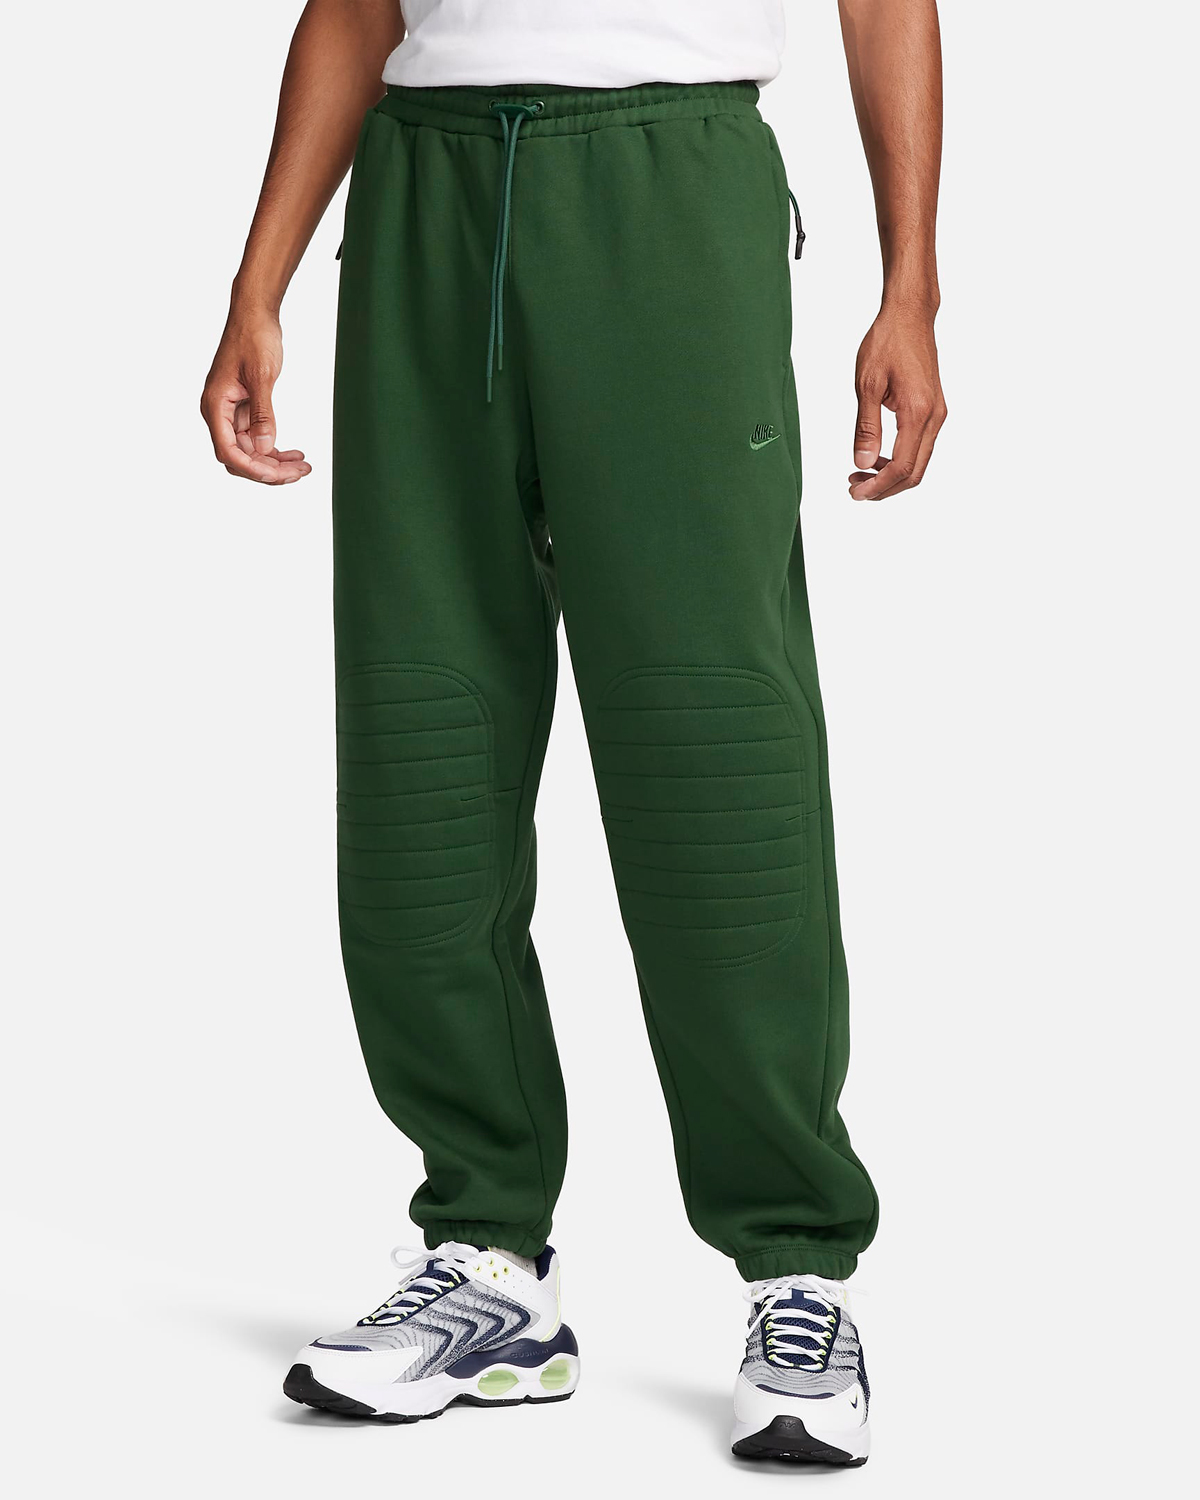 Nike-Sportswear-Tech-Pack-Winterized-Pants-Fir-Green